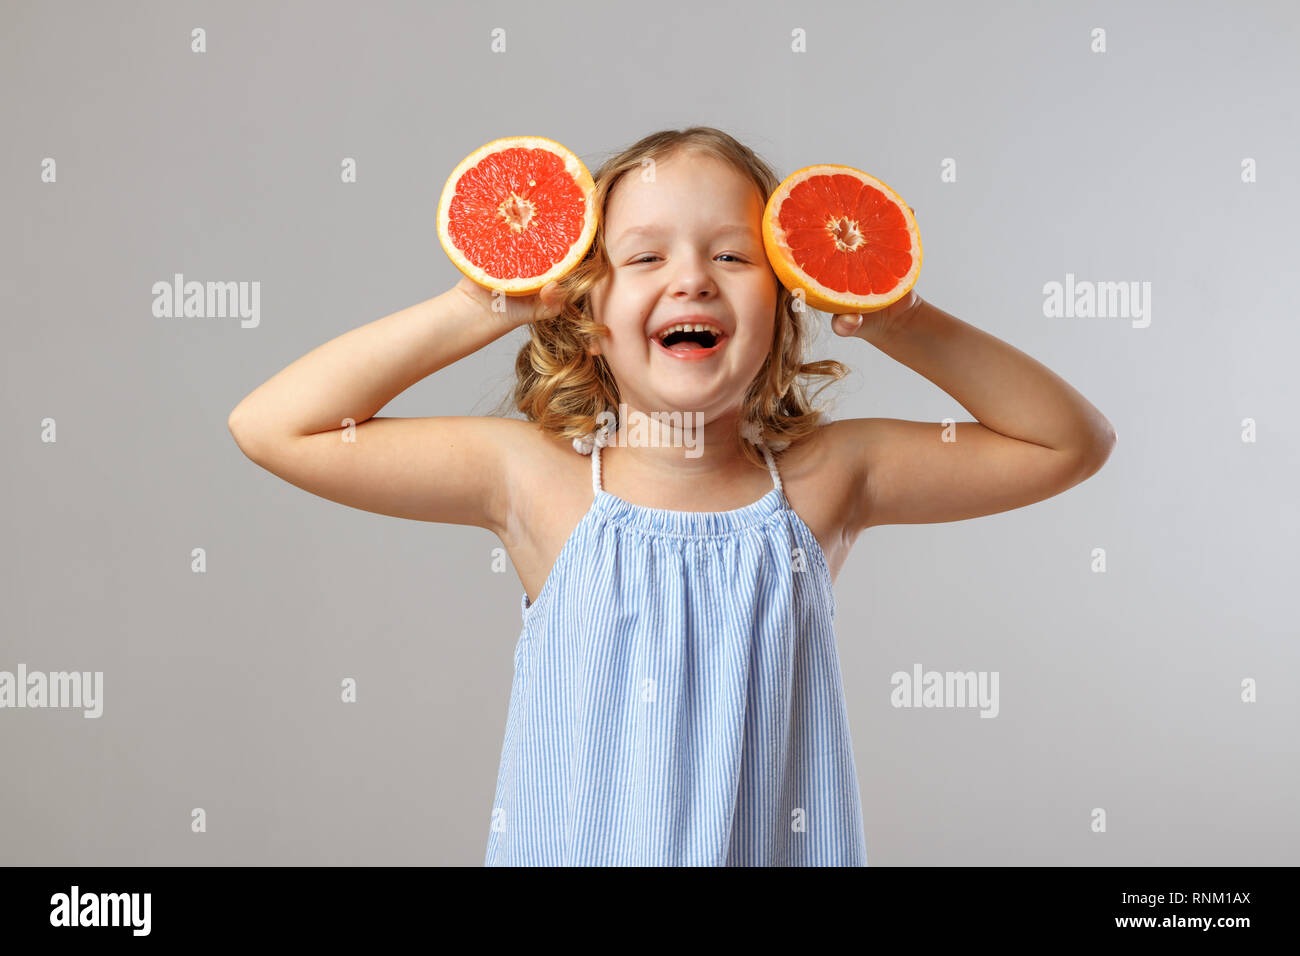 Petite fille joyeuse enfant rire et substituts moitiés de pamplemousse au lieu d'oreilles. Fond gris, studio Banque D'Images